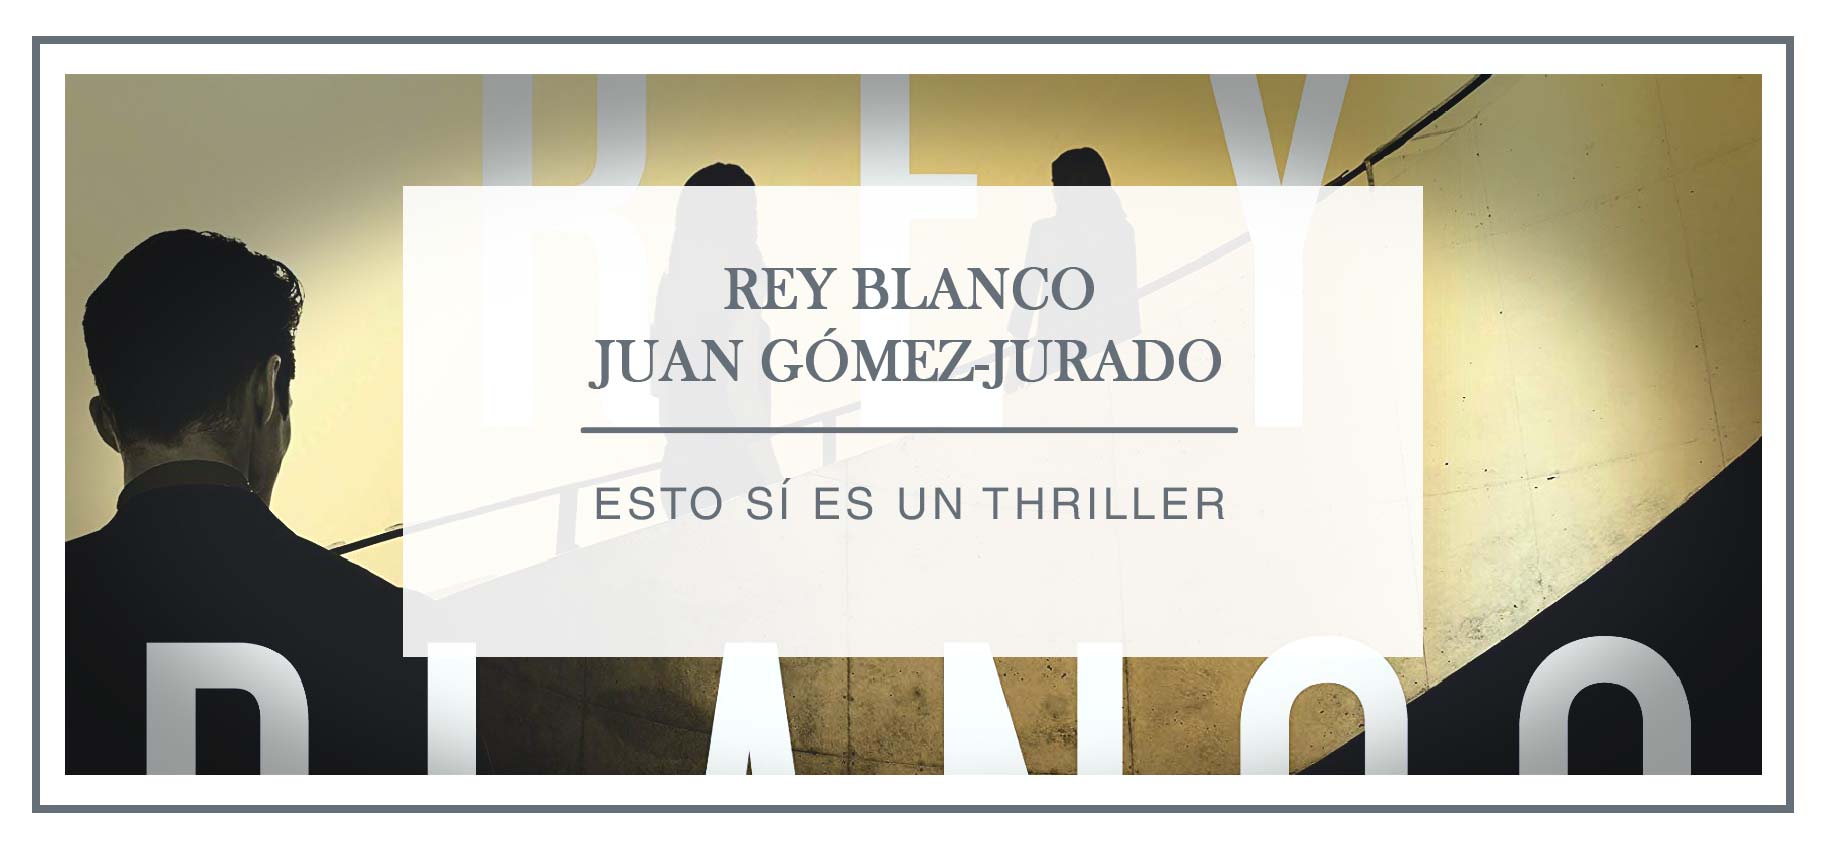 Juan Gómez-Jurado, autor de Rey Blanco: “Que haya más aventuras de